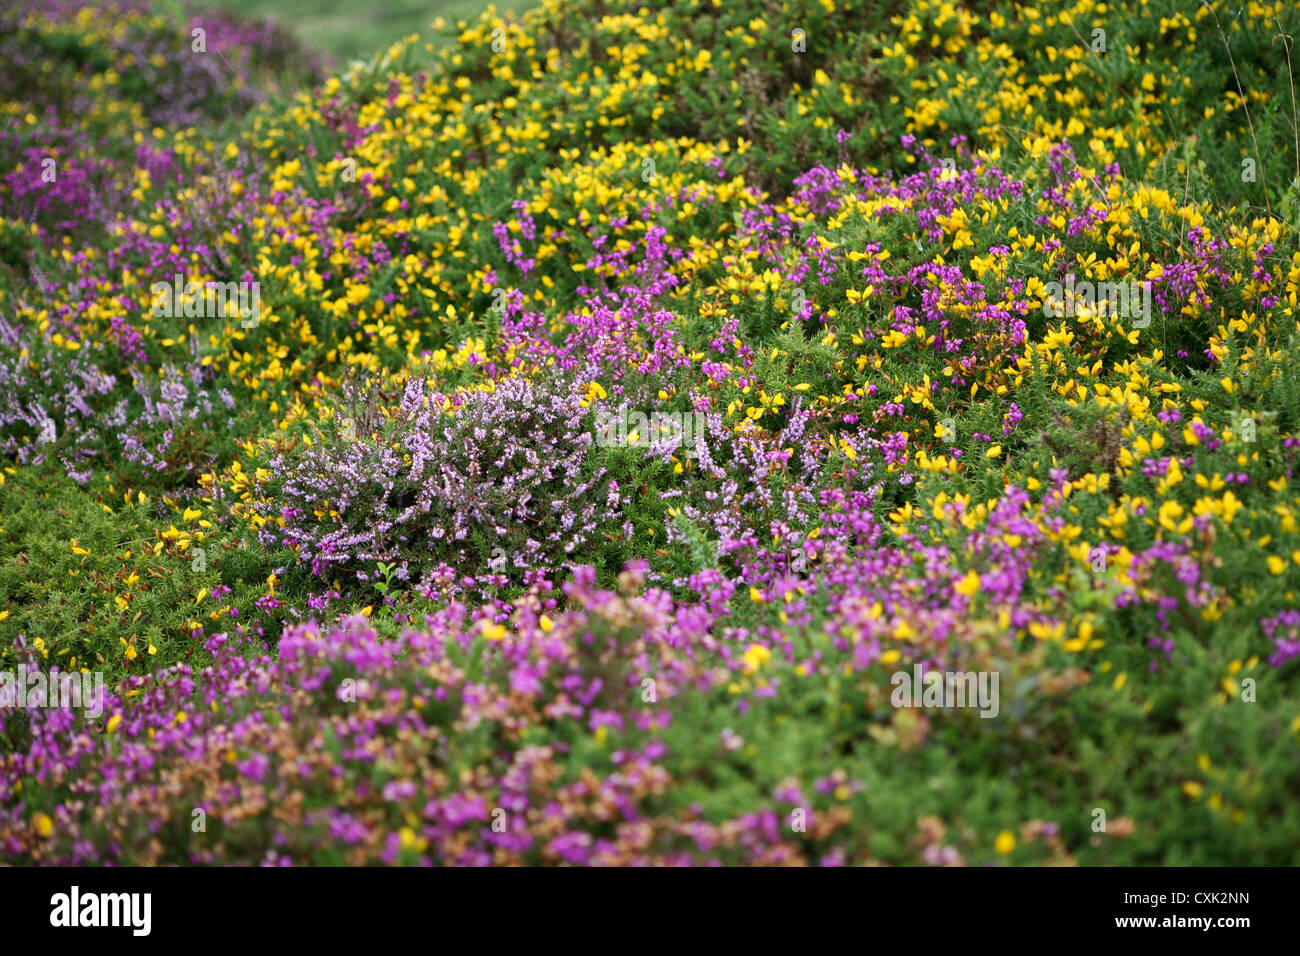 La bruyère commune (Calluna vulgaris) et la gorge jaune (Ulex europaeus) fleurissent ensemble sur des landes ouvertes, Dartmoor Banque D'Images